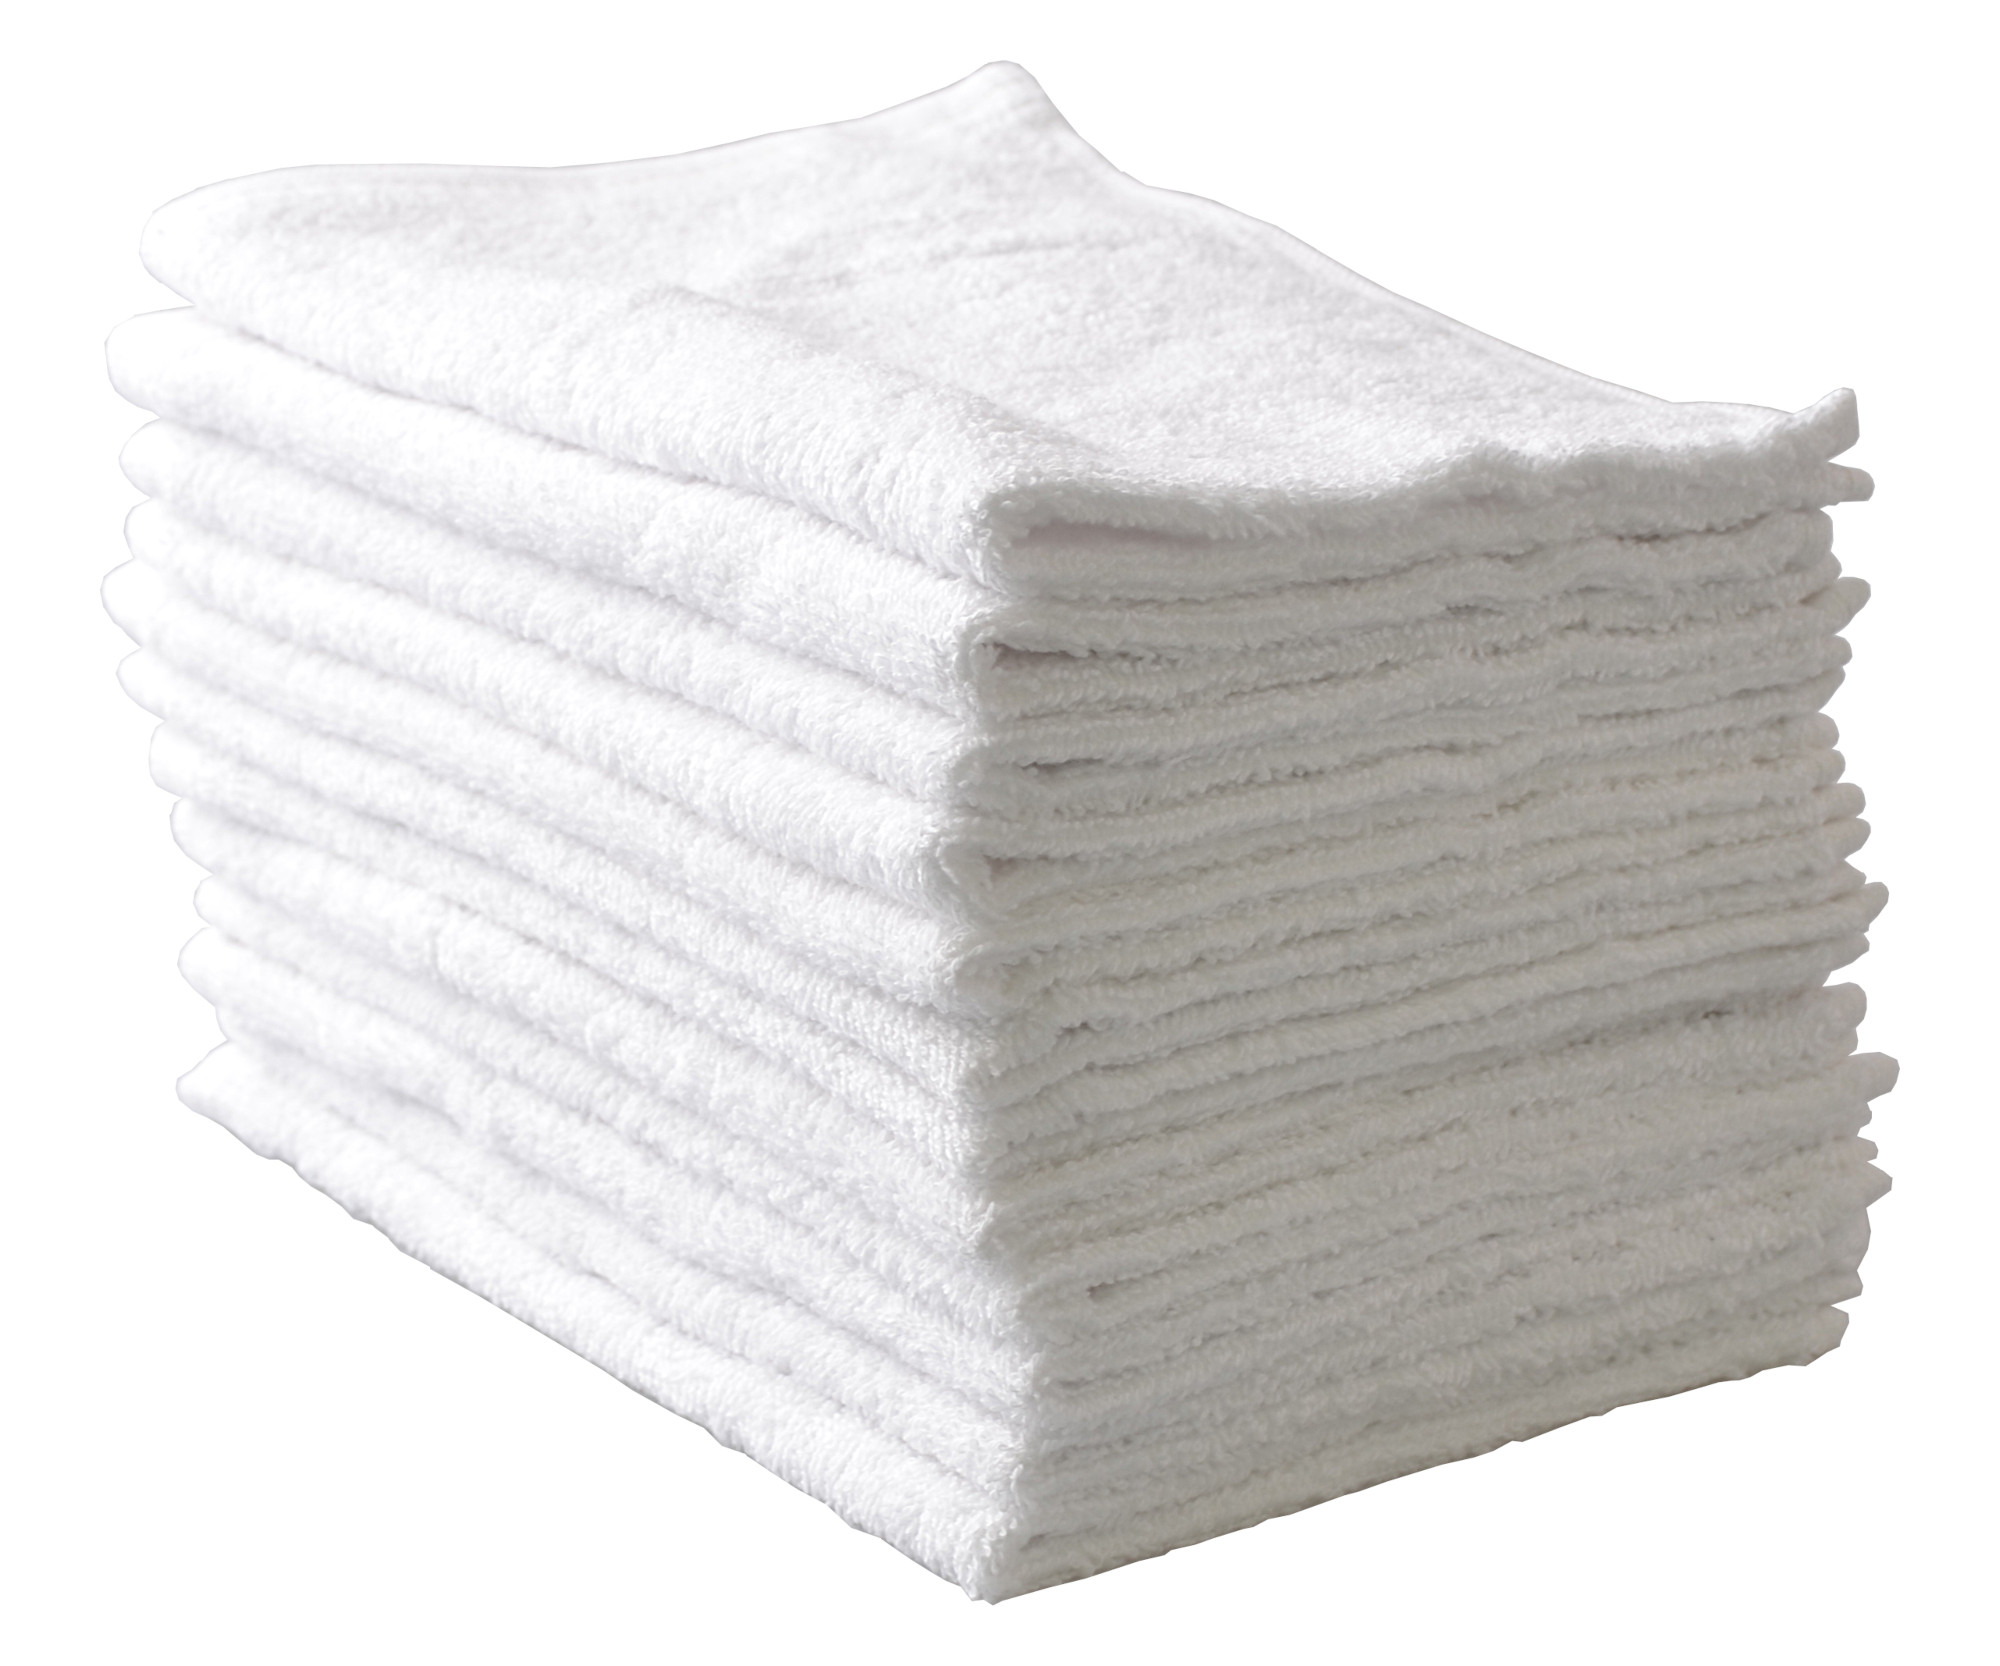 Ručníky froté 45 x 28 cm, 100% bavlna, Sibel, bílé - 12 ks (3505001) + DÁREK ZDARMA